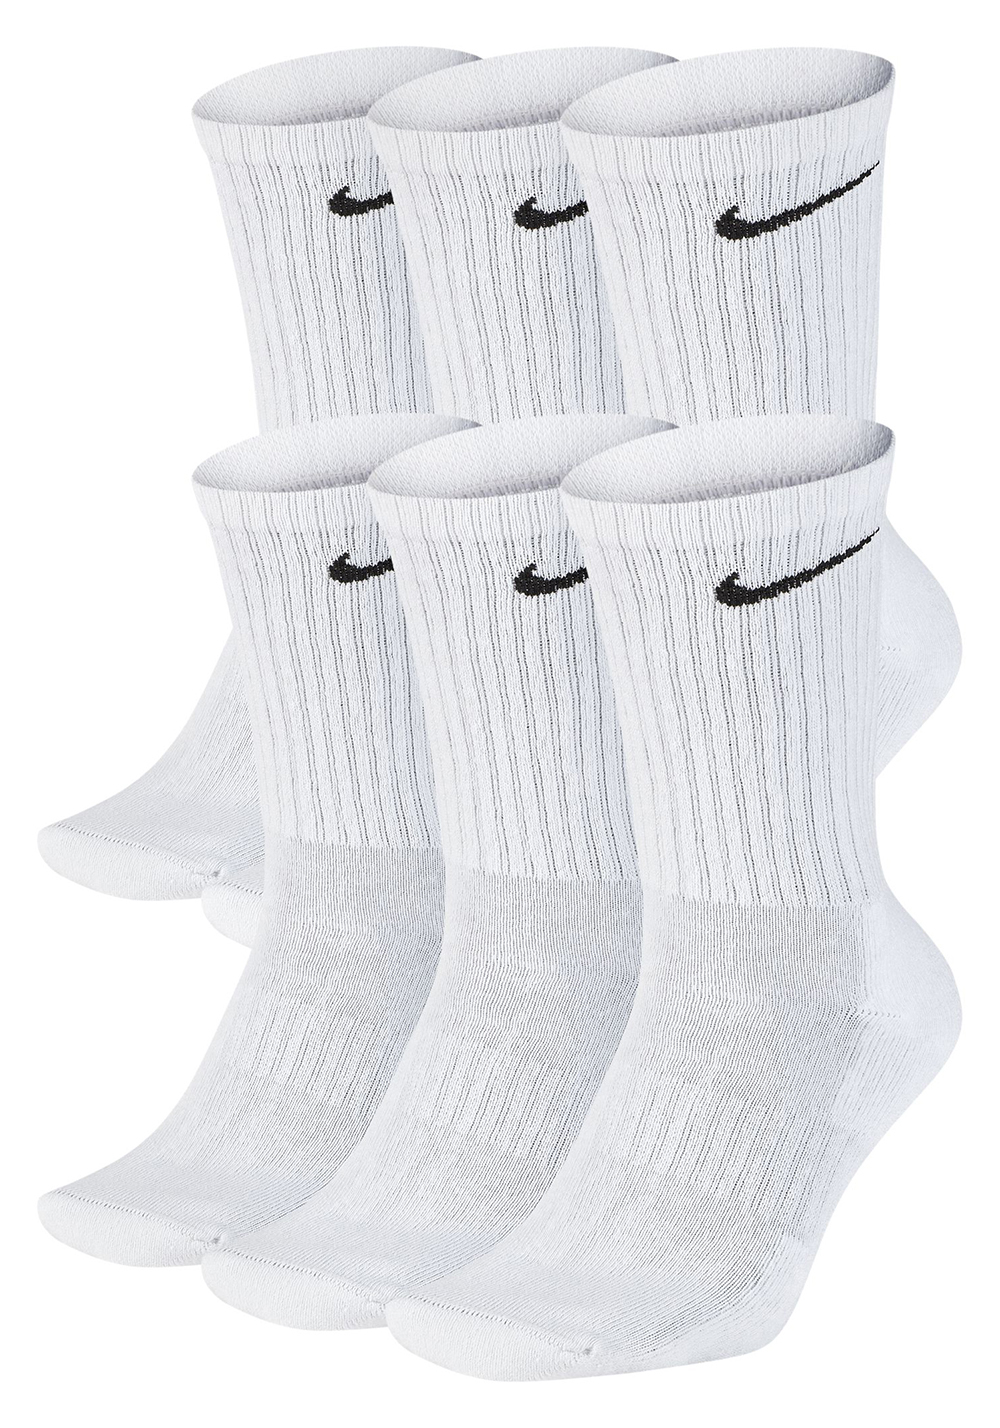 nike mens socks on sale